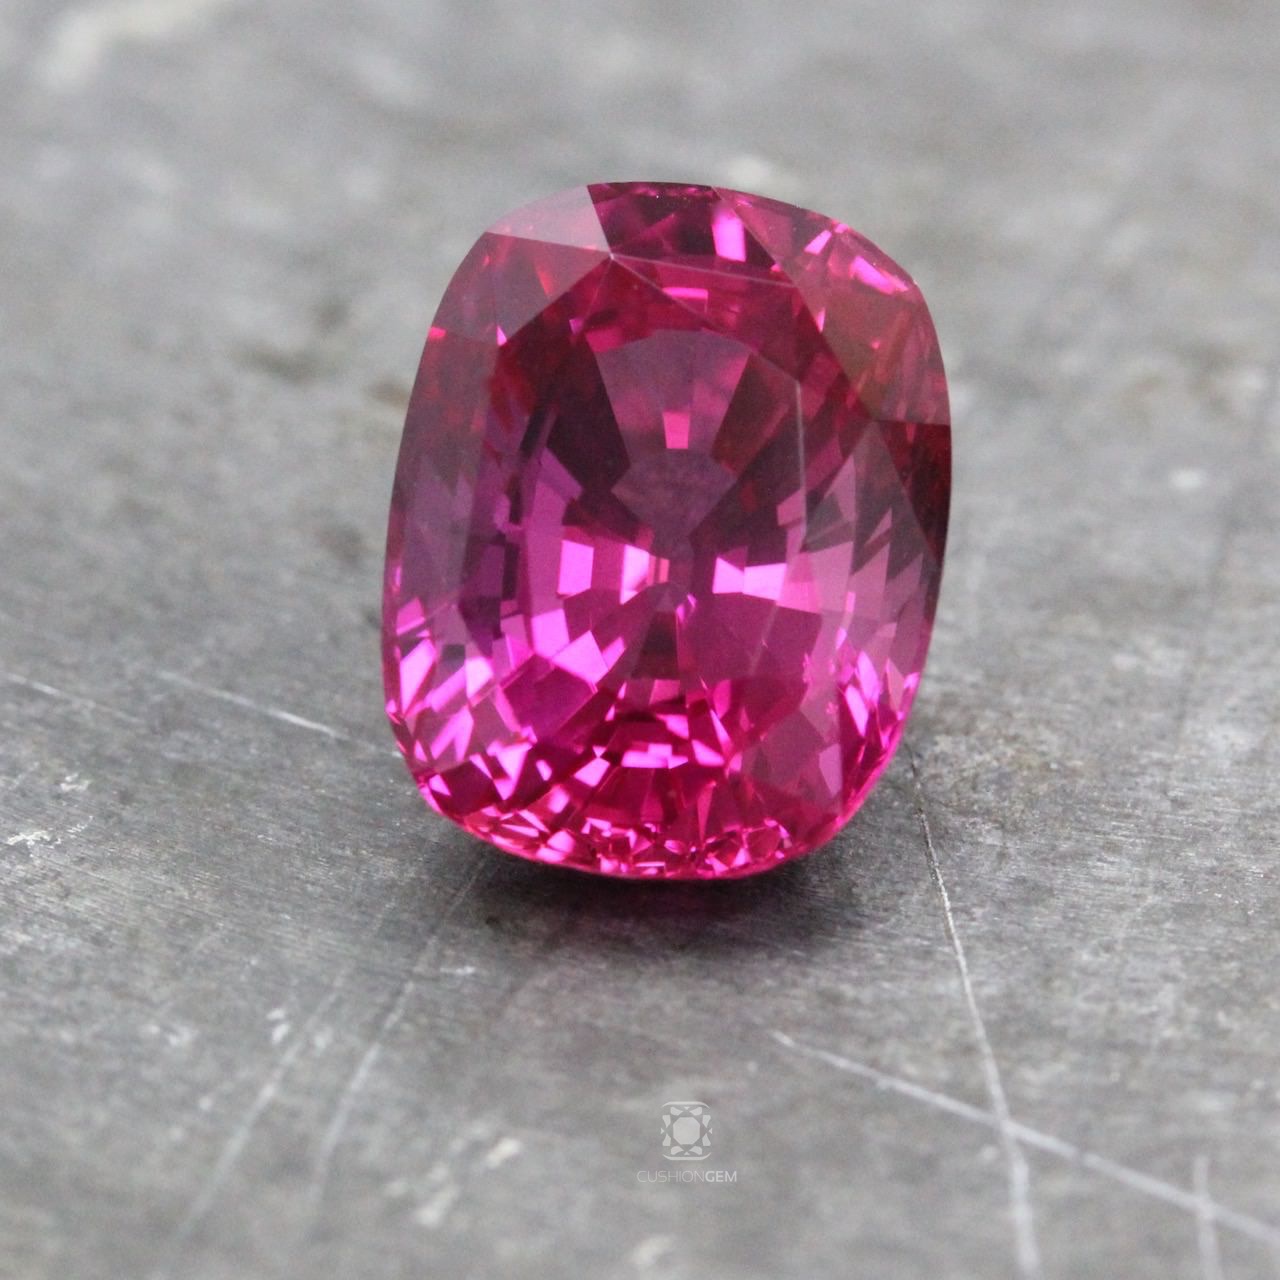 A 9 carat pink sapphire